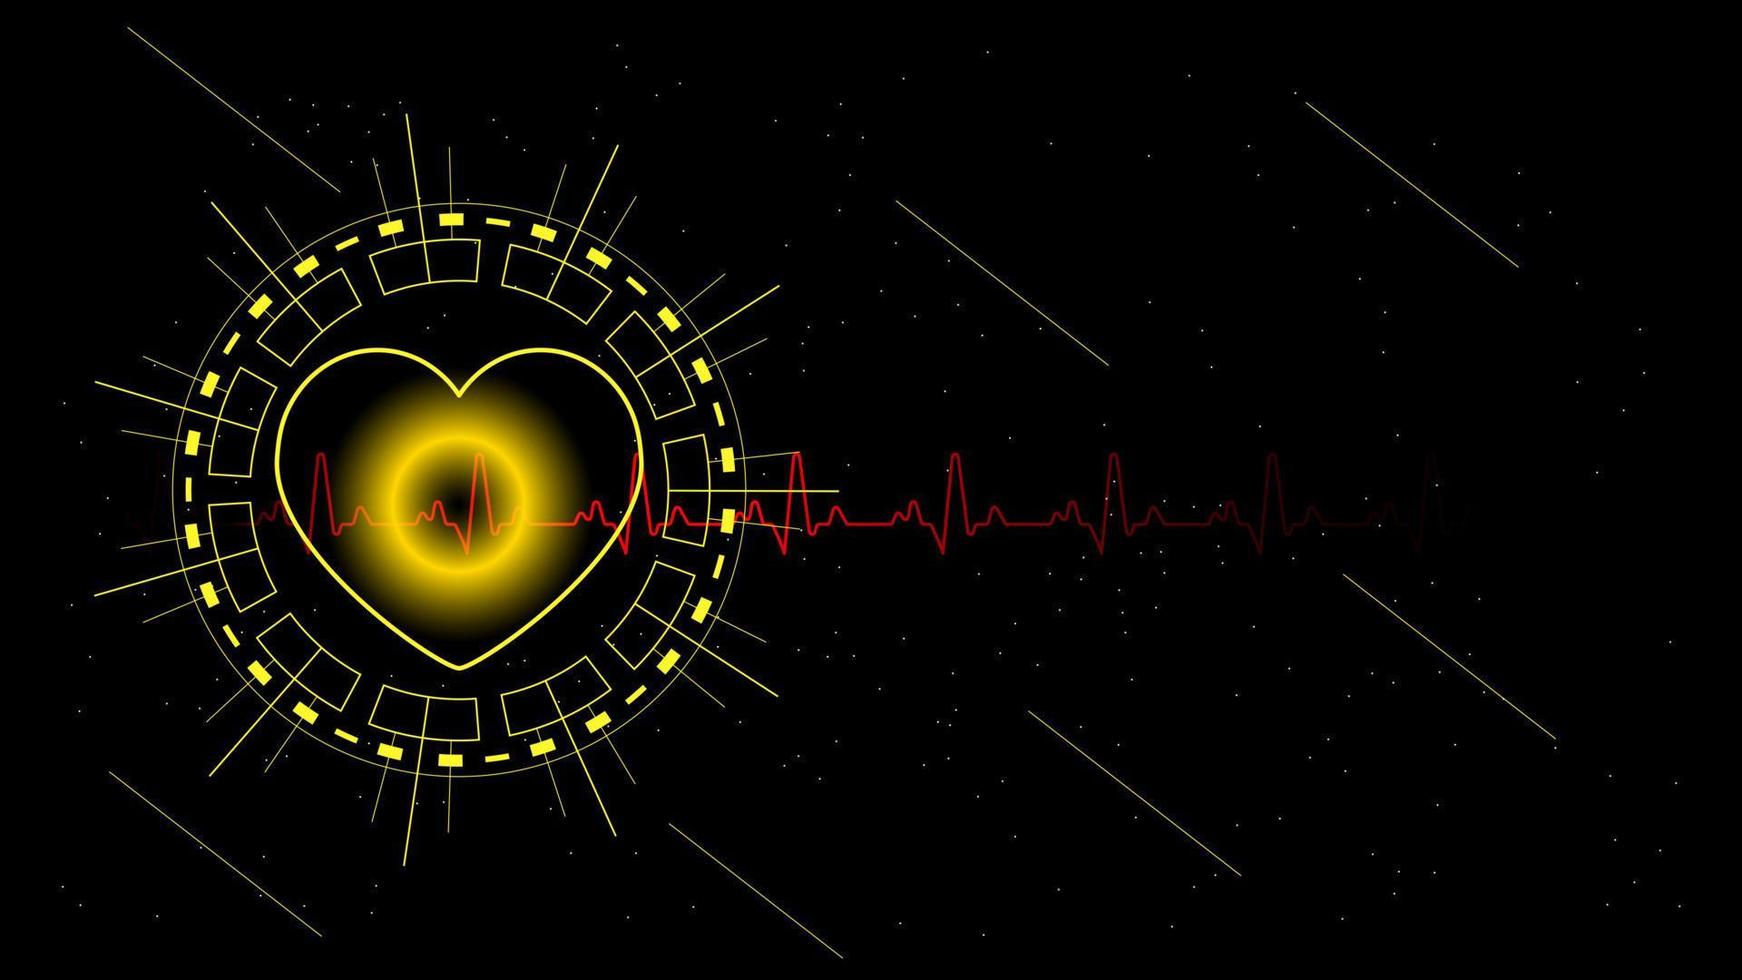 pulso cardíaco ou ekg no monitor para interface ui hi-tec tecnologia digital preta e dourada com partículas brilhantes, ilustração vetorial. vetor